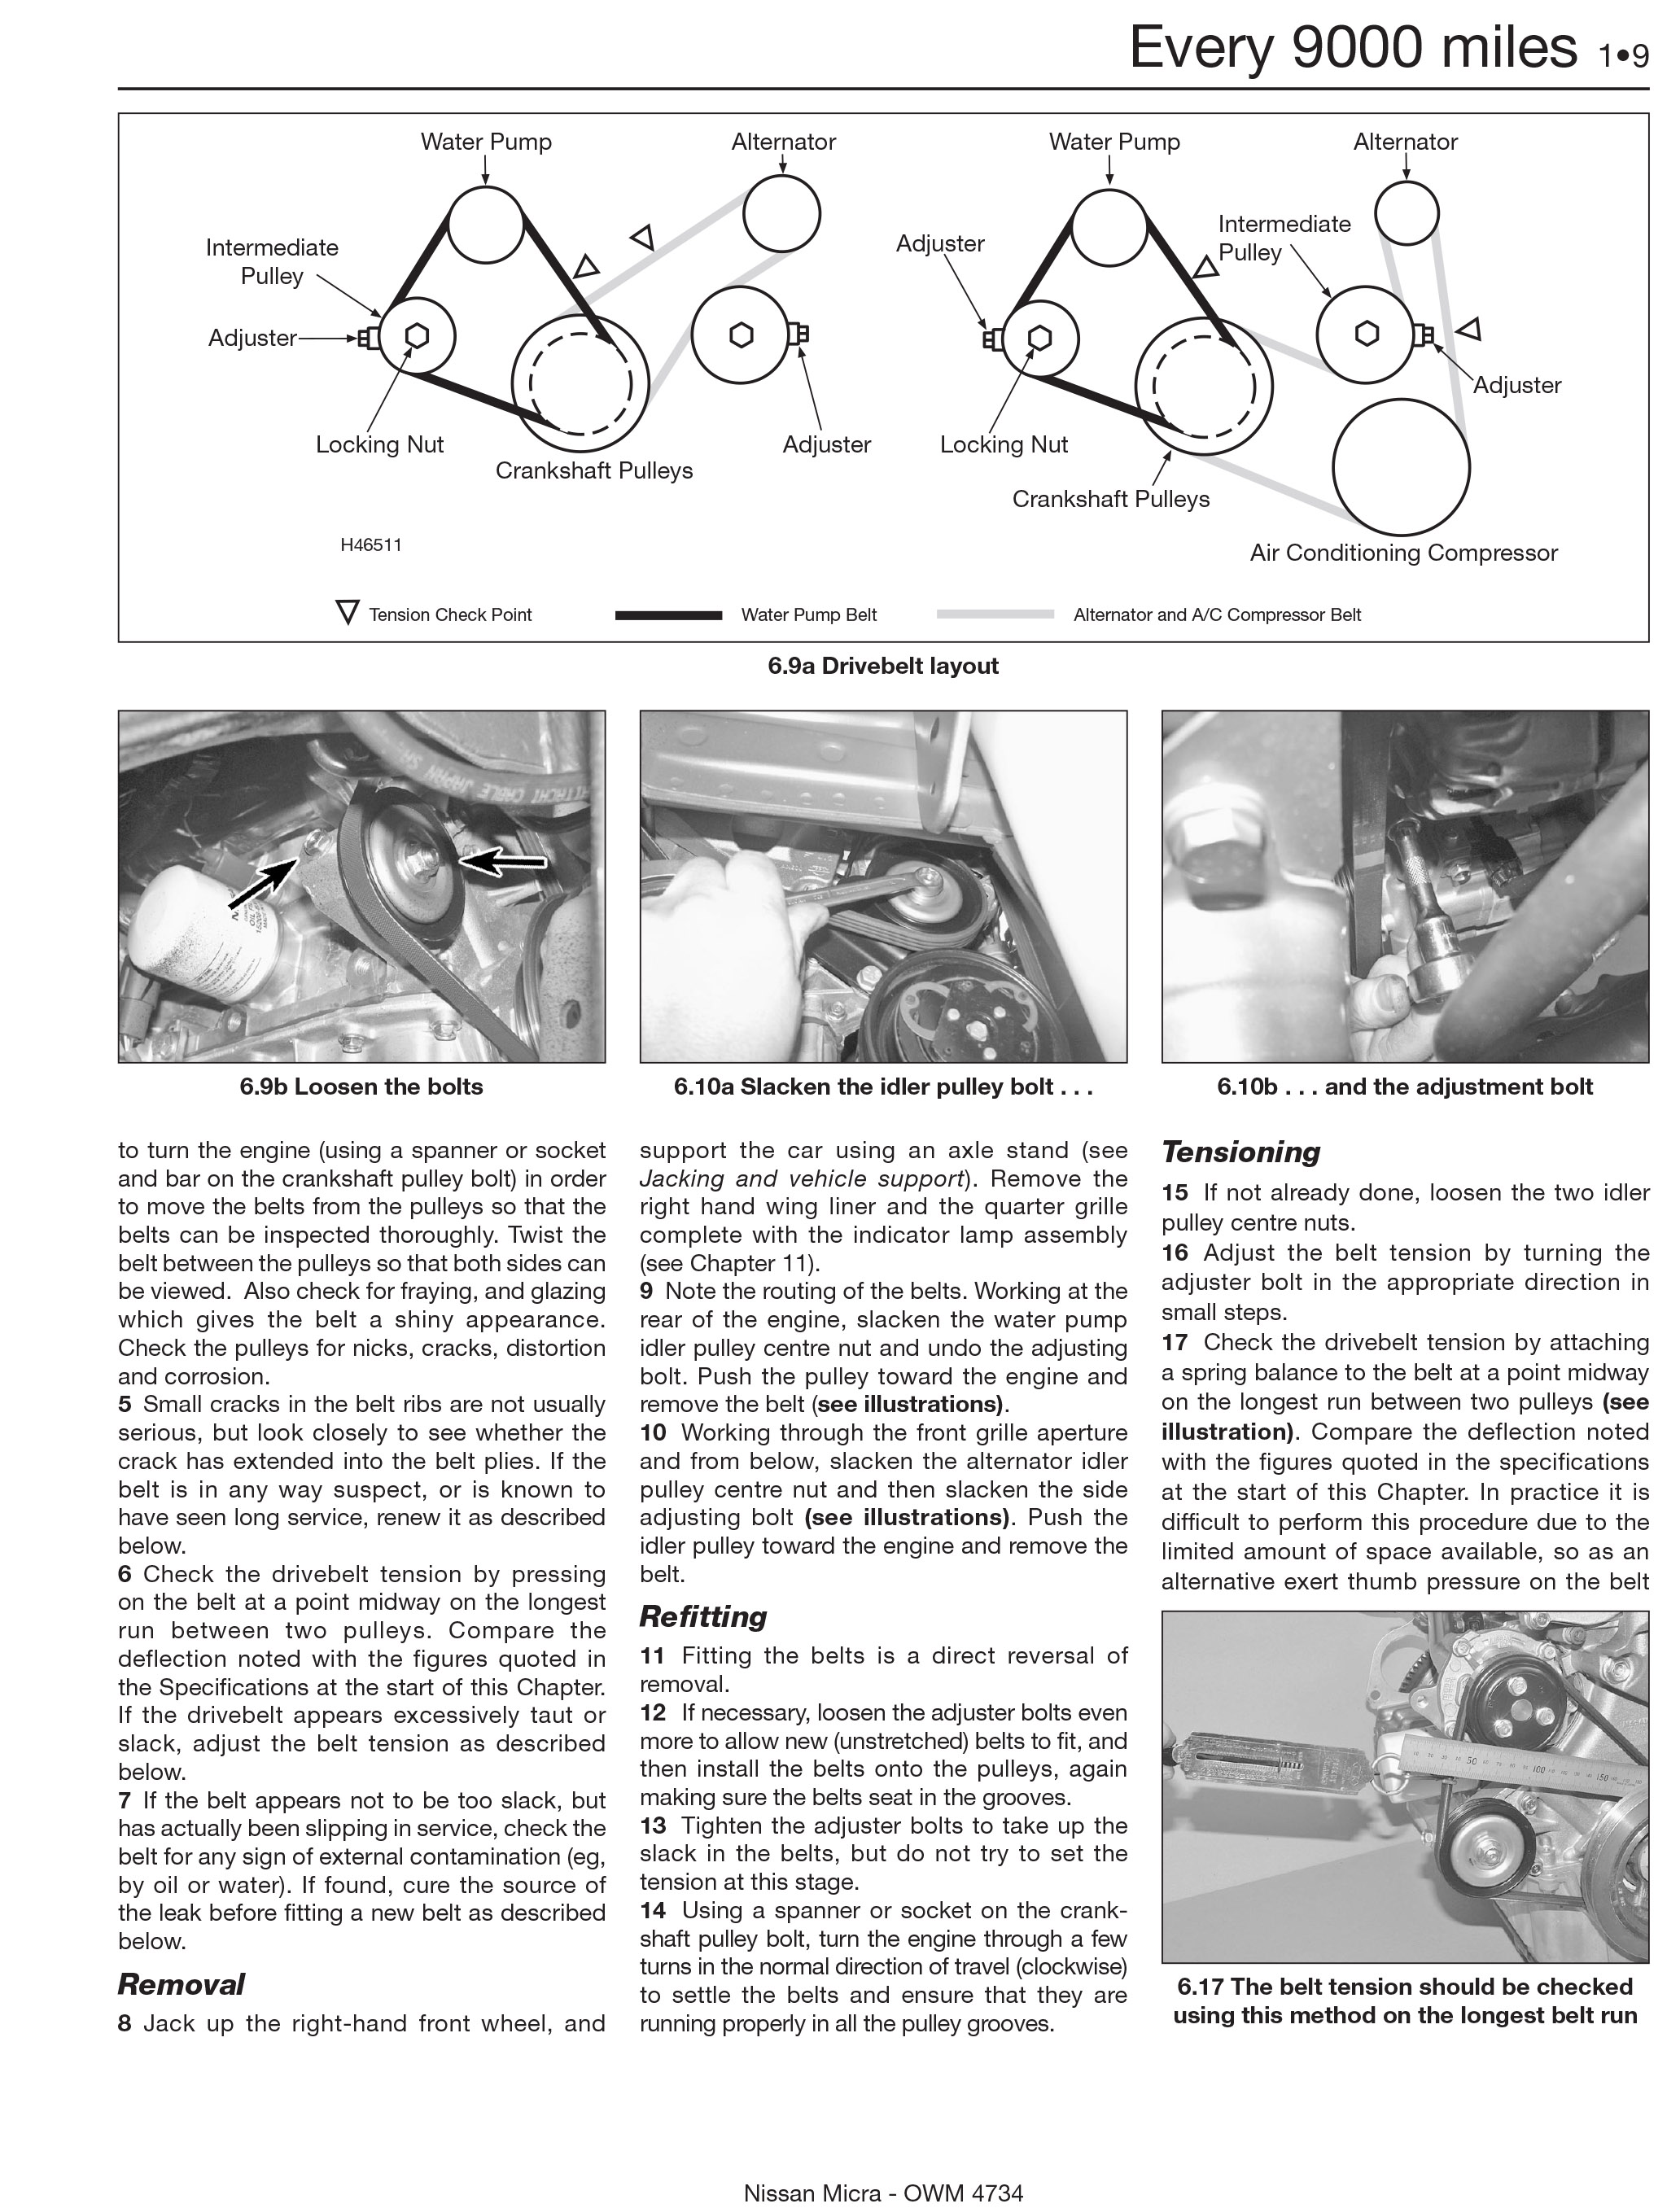 1997 nissan pickup repair manual free download